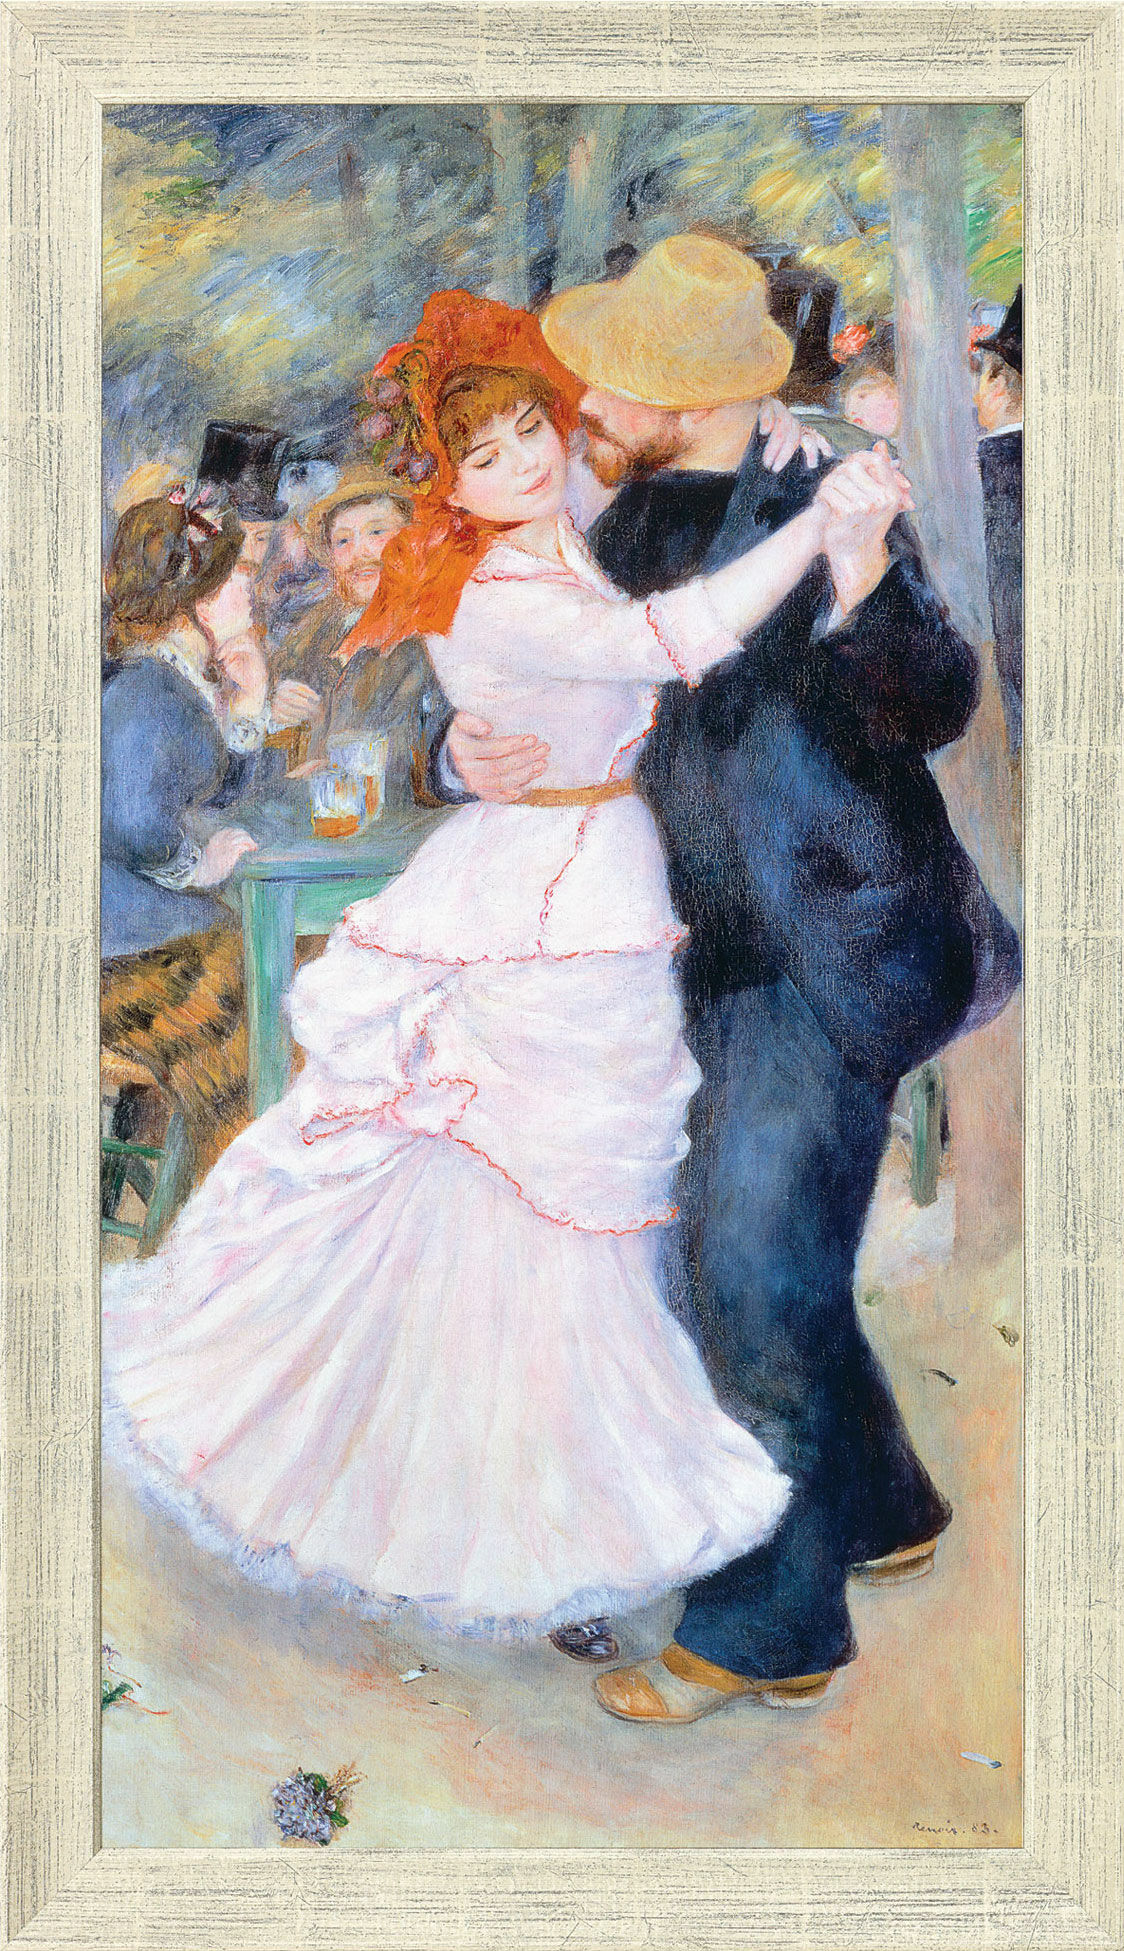 Tableau "Danse au Bougival" (1883), encadré von Auguste Renoir